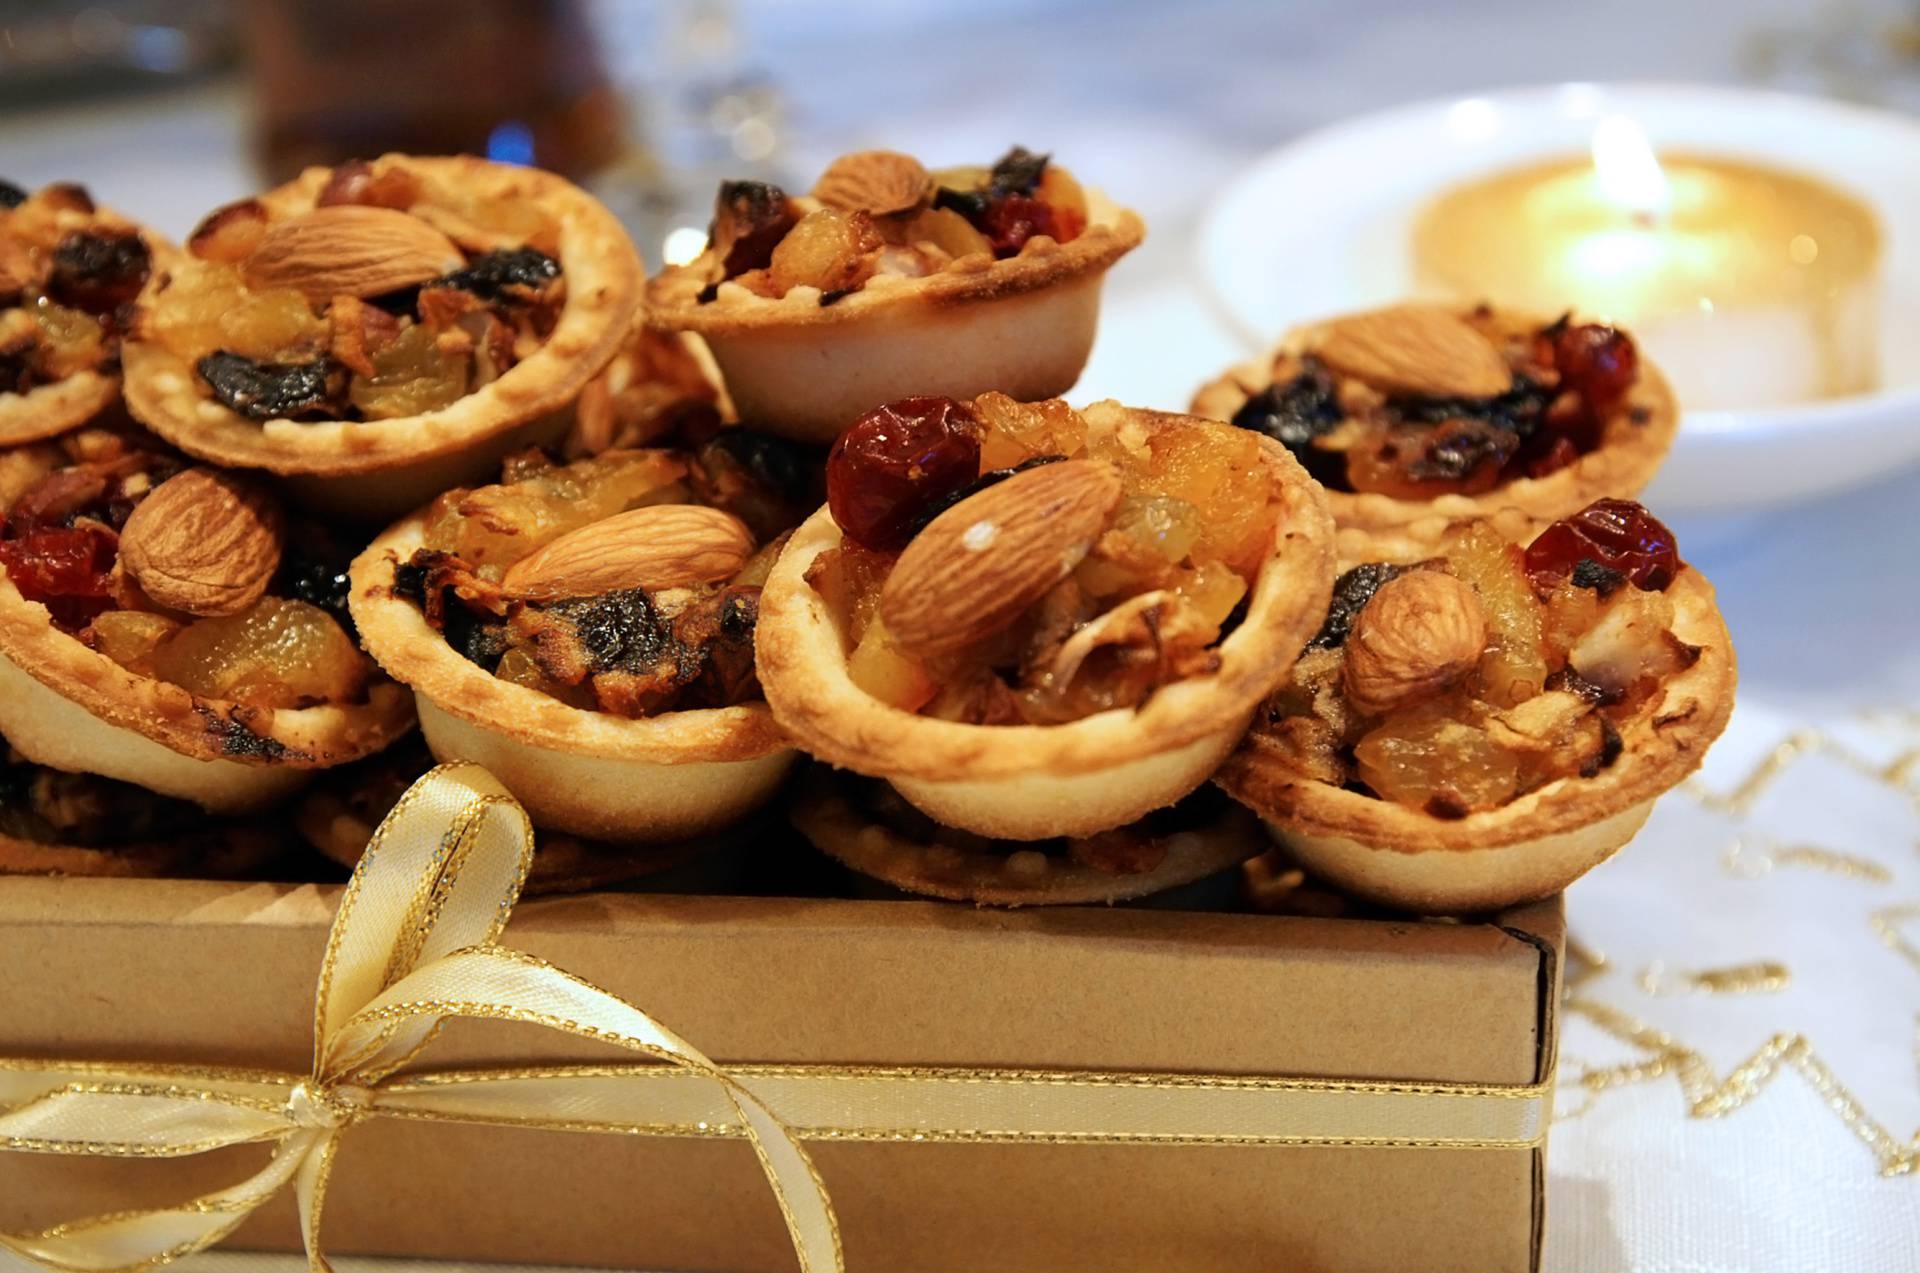 Mince pies je tradicionalni britanski božićni desert, a ako ga želite kušati - tu je recept